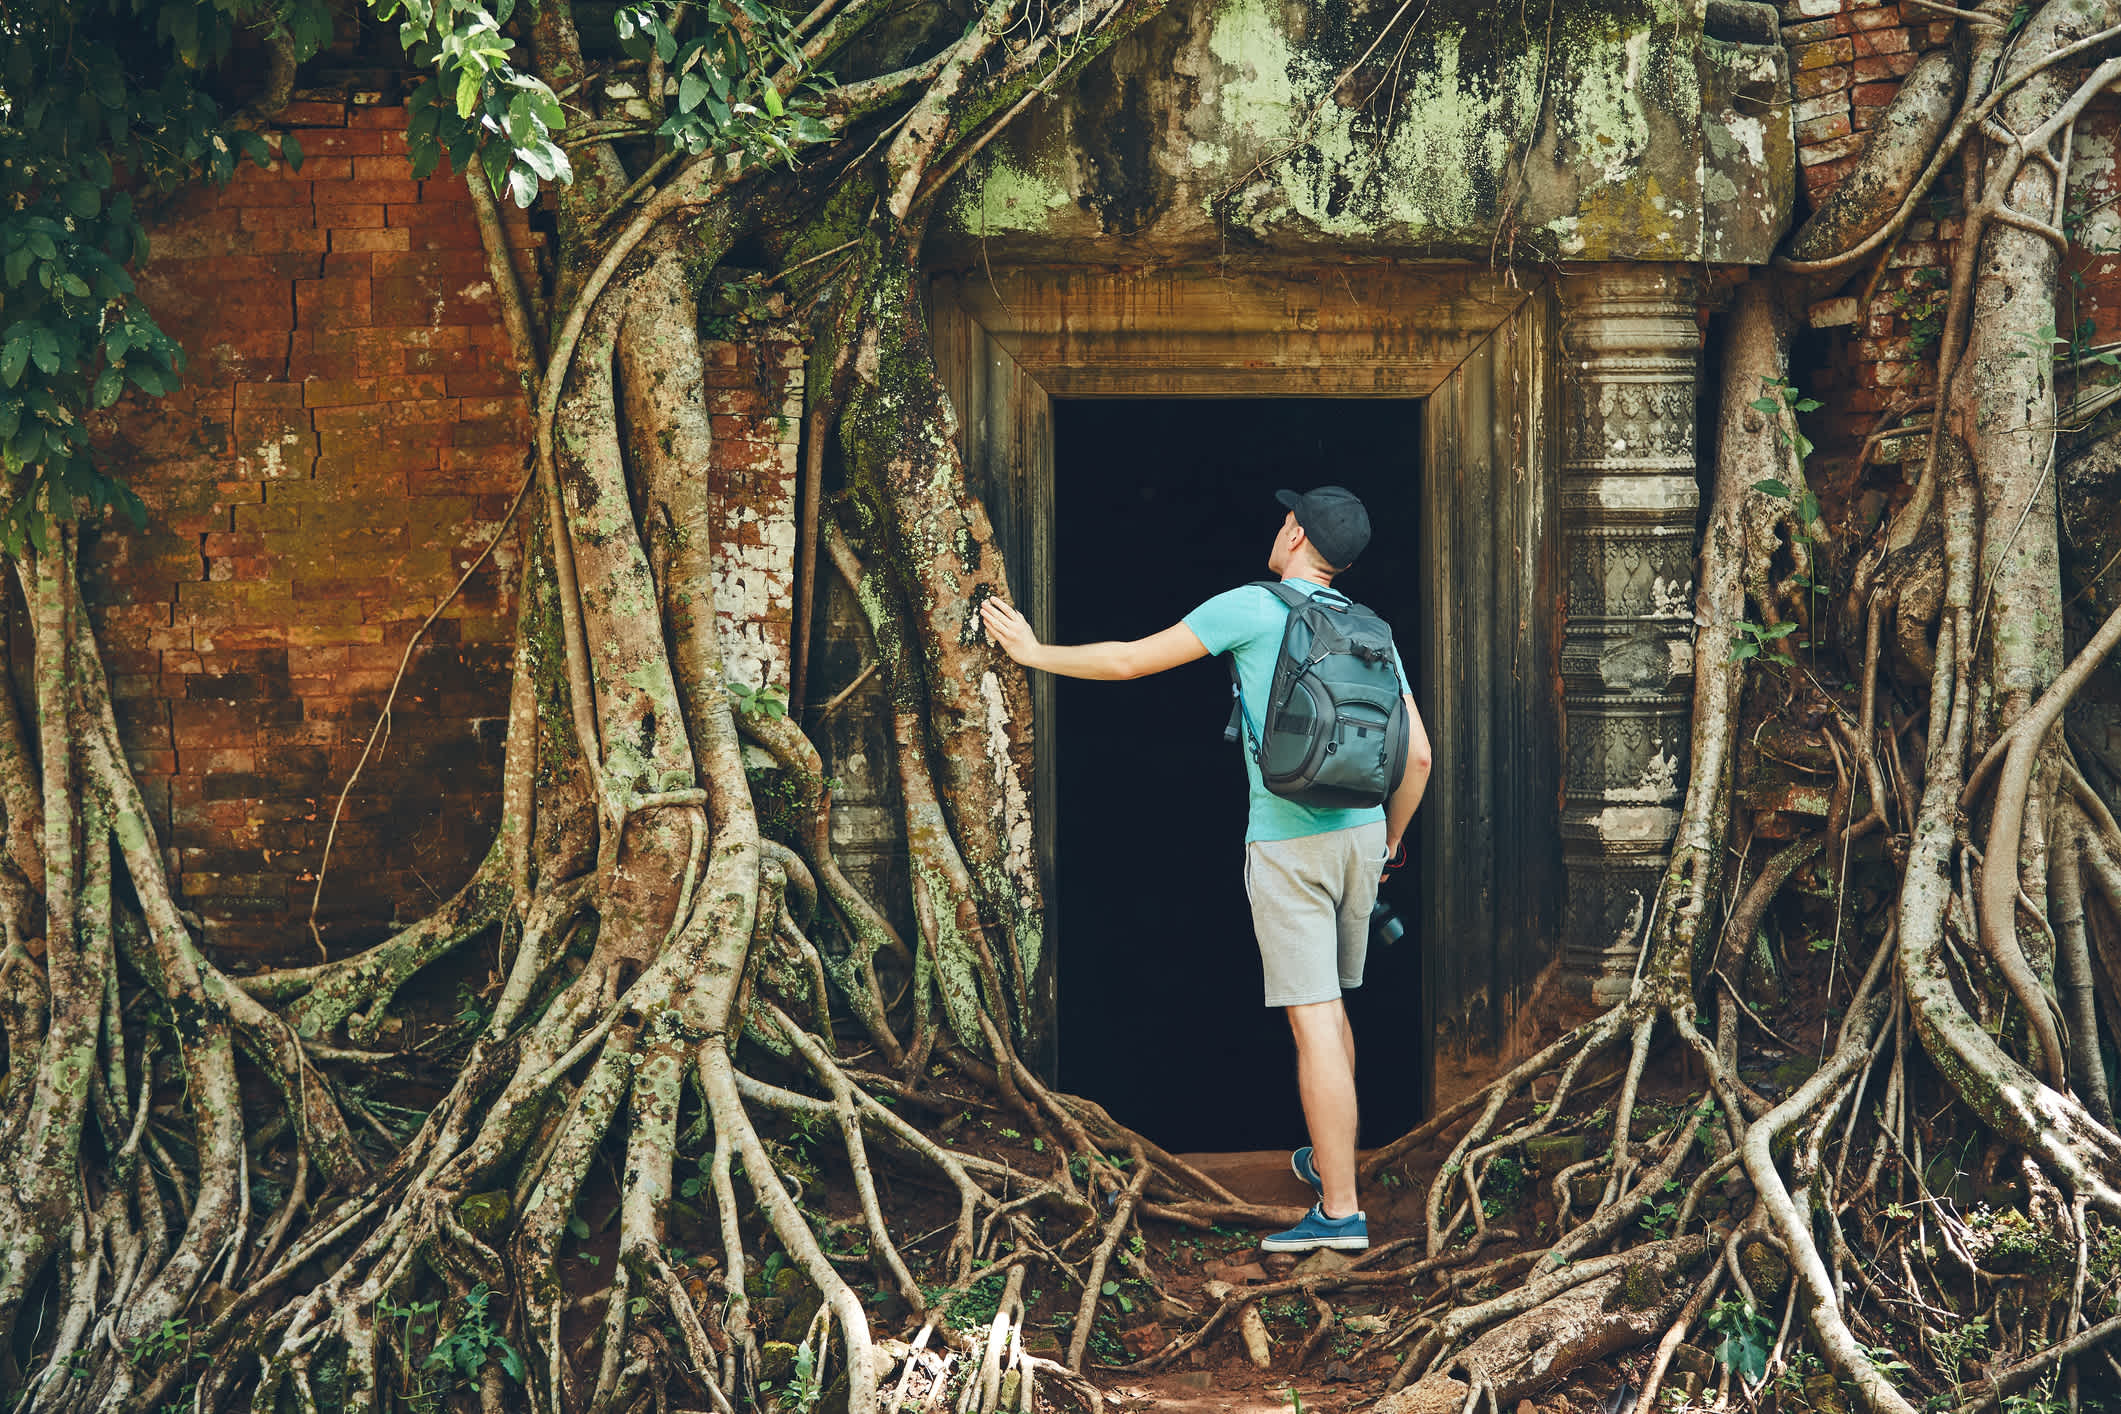 Der Mann mit Rucksack in Angkor Wat, Siem Reap in Kambodscha

